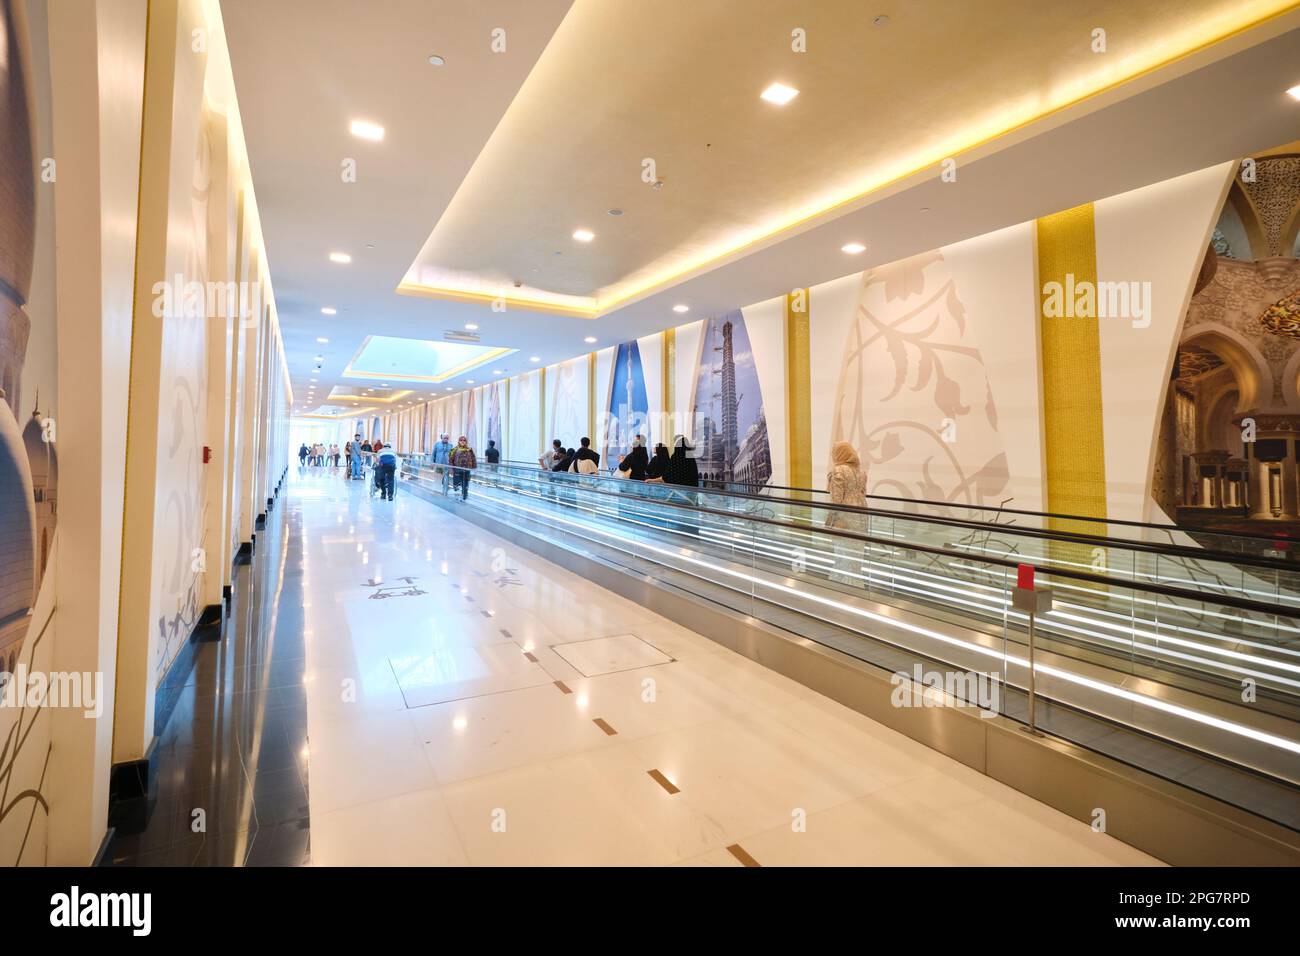 Der Fußweg und die sich bewegenden Gehwege entlang des langen, unterirdischen Korridors, über den Besucher die Anlage erreichen können. In der Scheich-Zayid-Moschee in Abu Dhabi Stockfoto